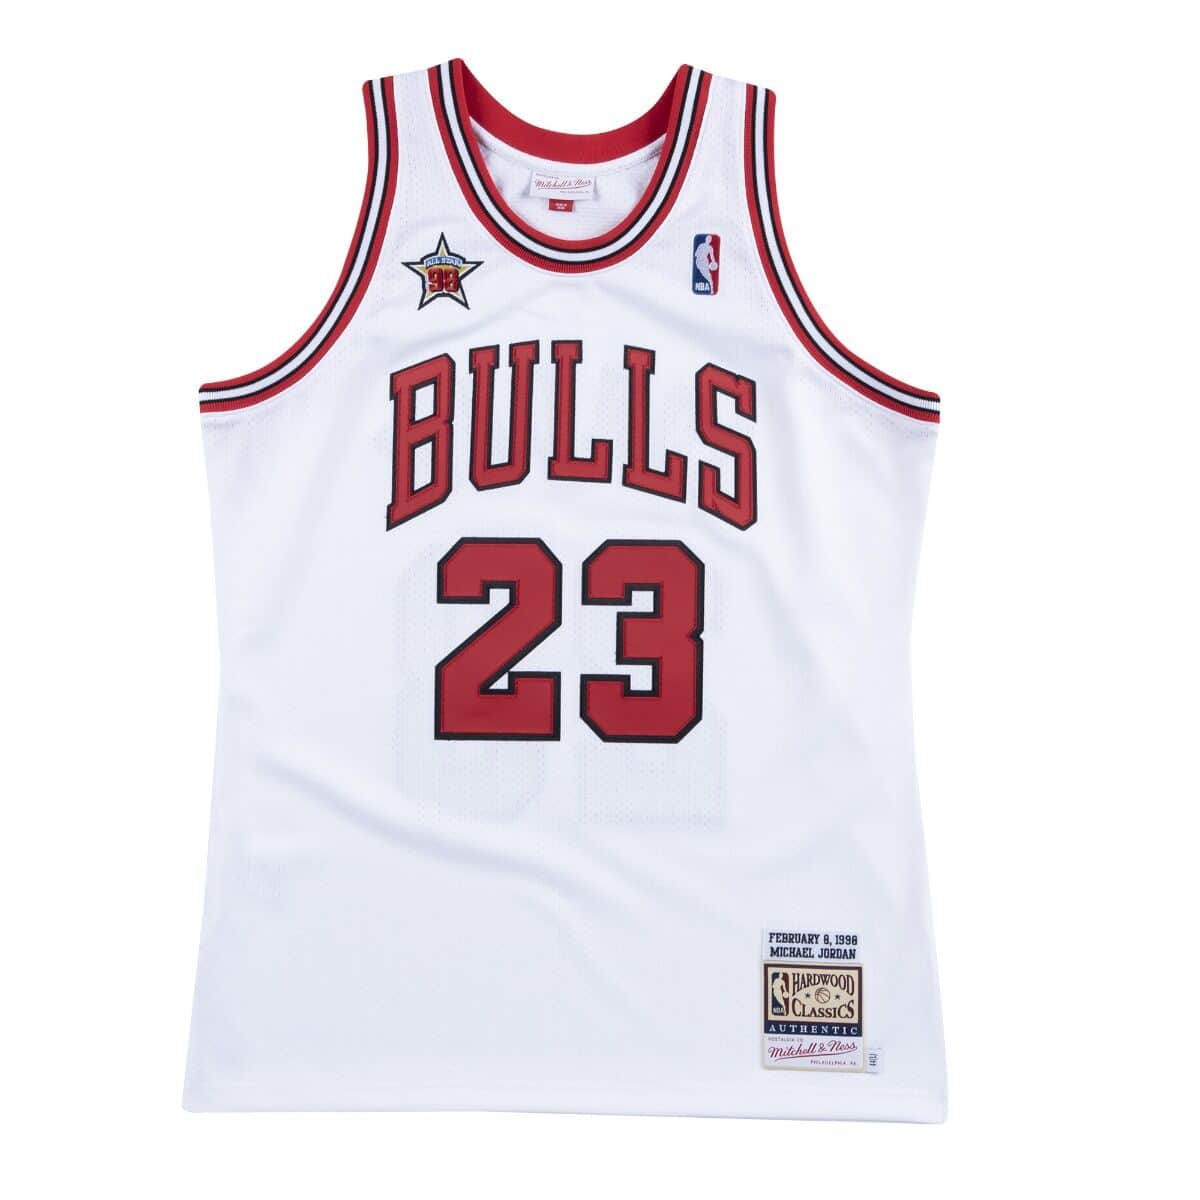 Authentic Michael Jordans Chicago Bulls 1998-99 Jersey